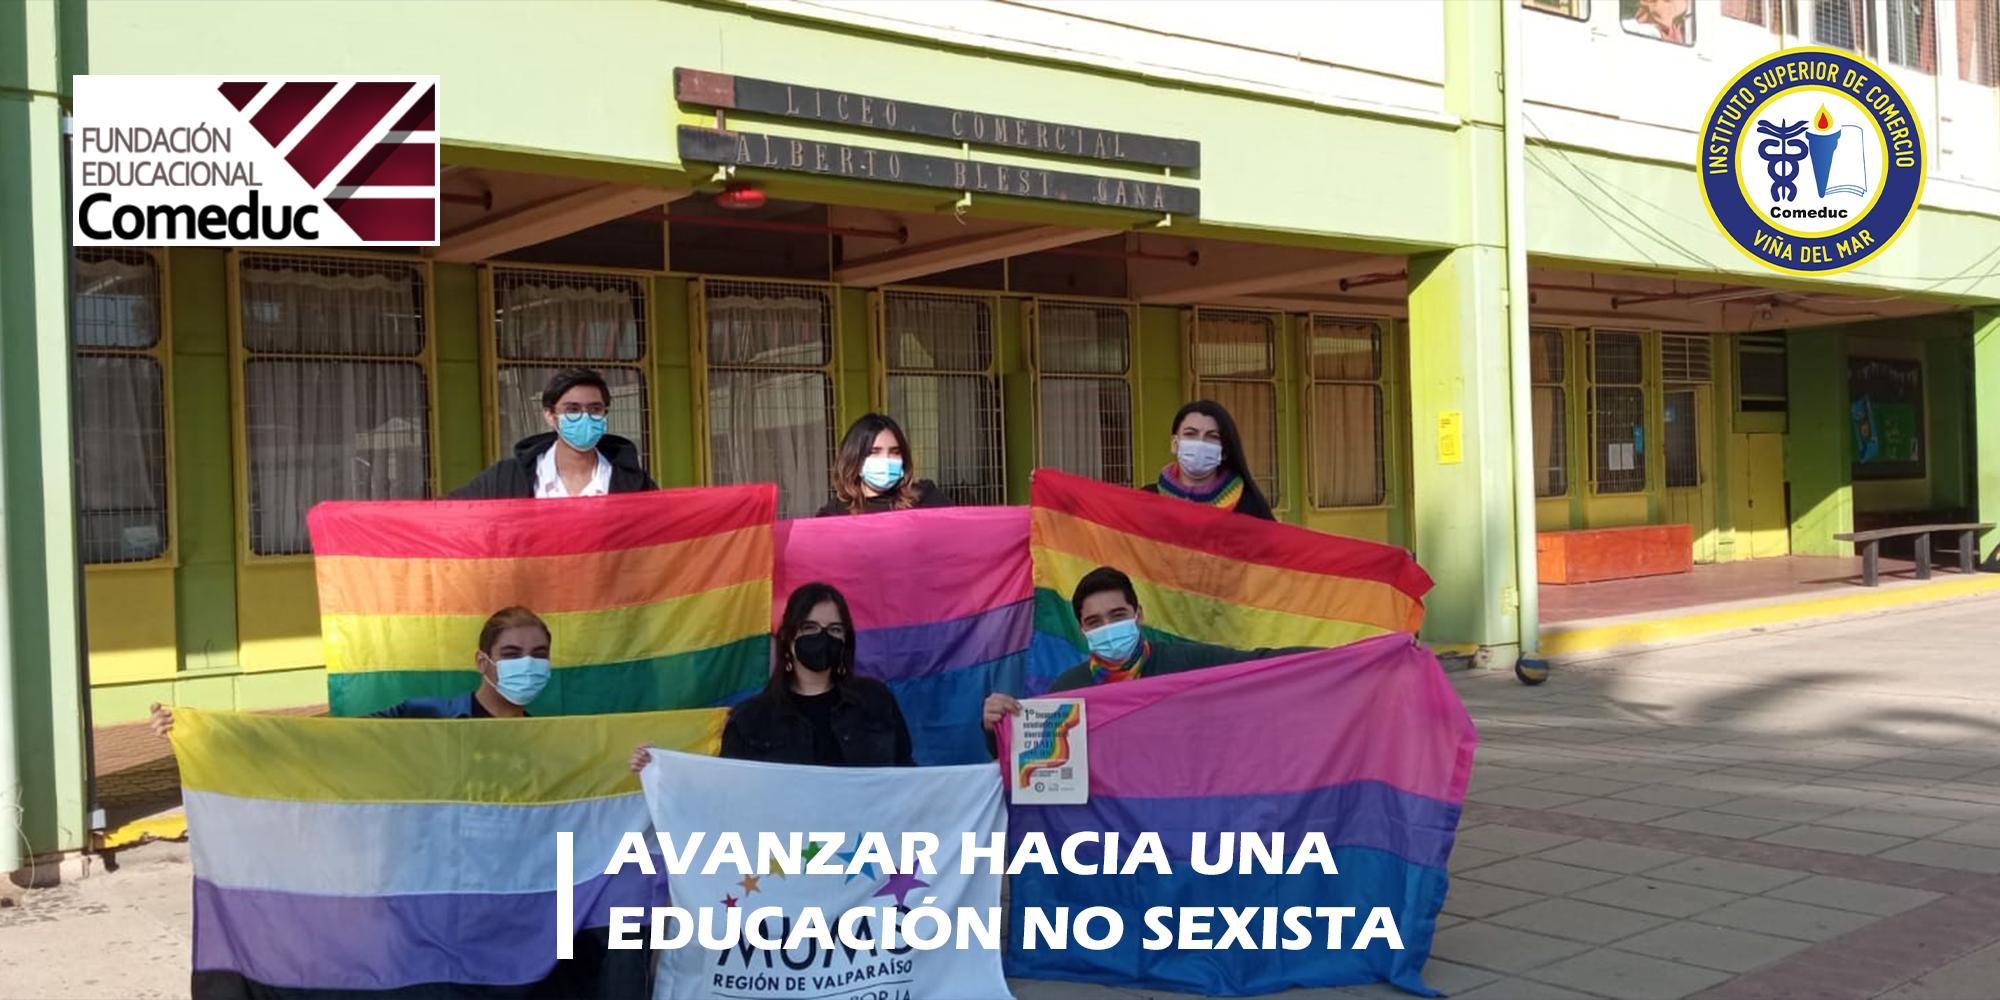 AVANZAR HACIA UNA EDUCACIÓN NO SEXISTA